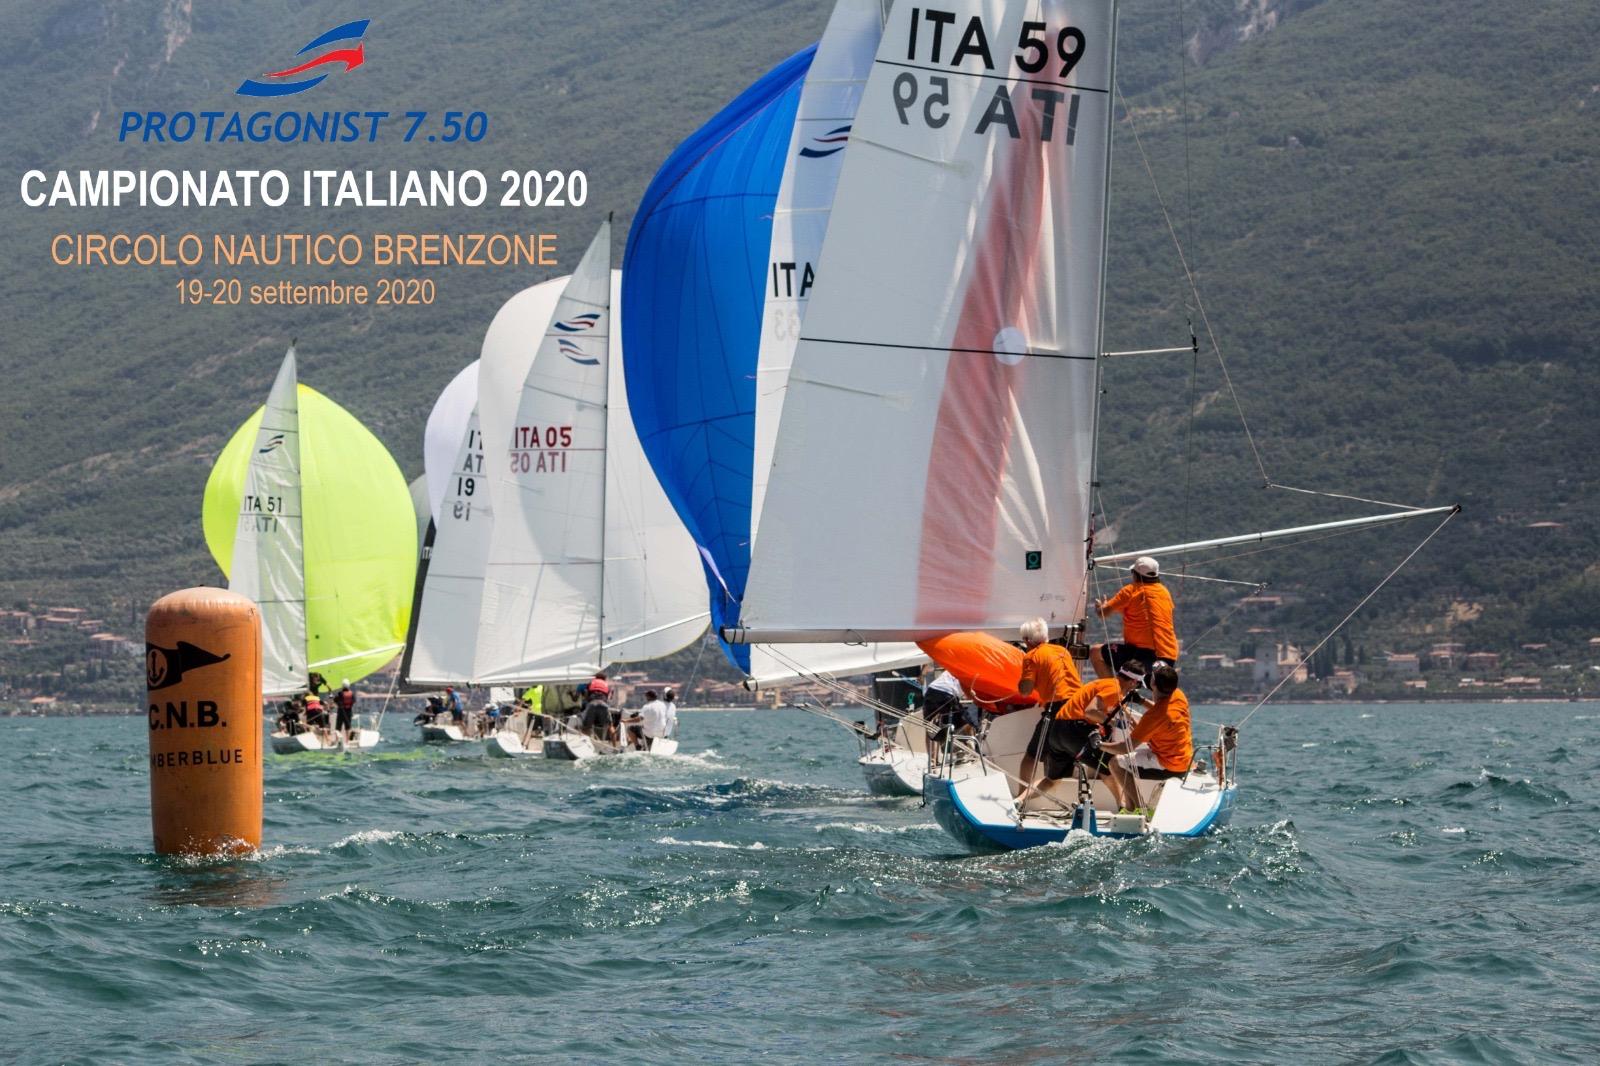 Protagonist 7.5: Campionato Italiano 2020 responsabilità ed innovazione